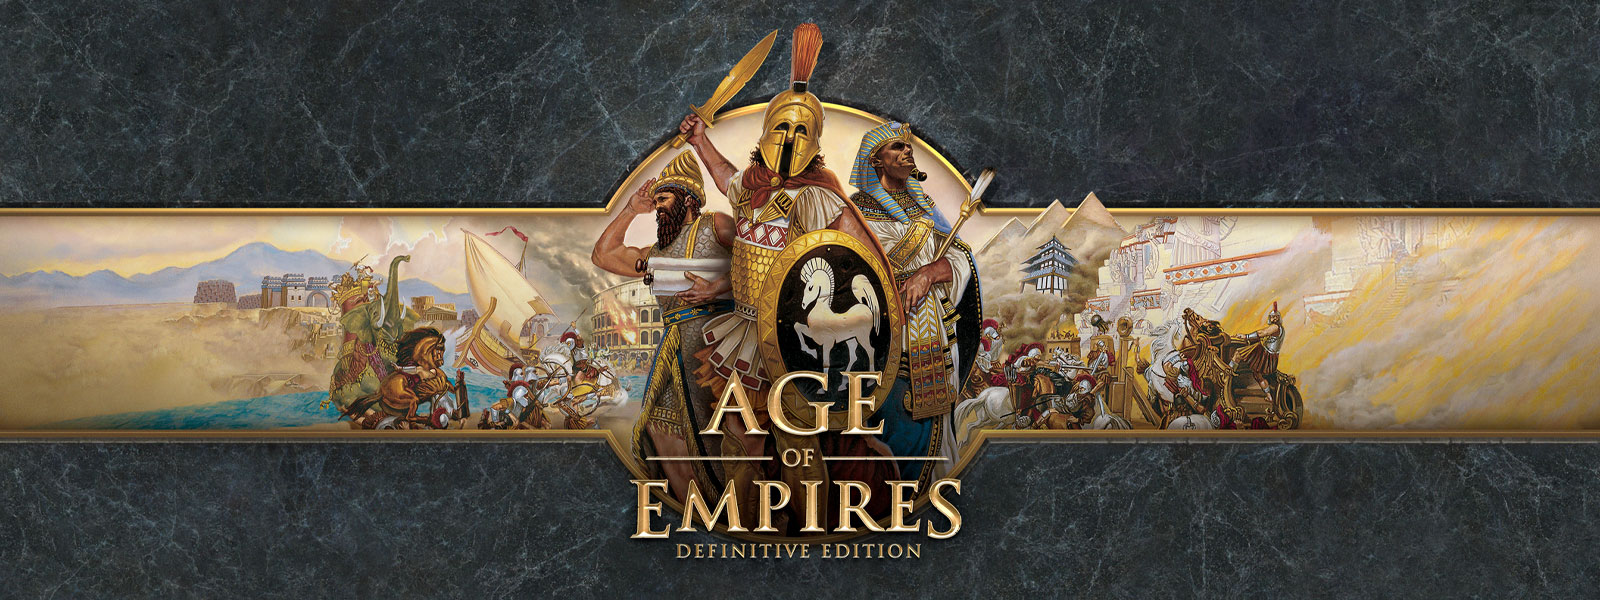 Age of Empires: Definitive Edition-logotypen mot en grå skifferbakgrund med härförare och deras arméer